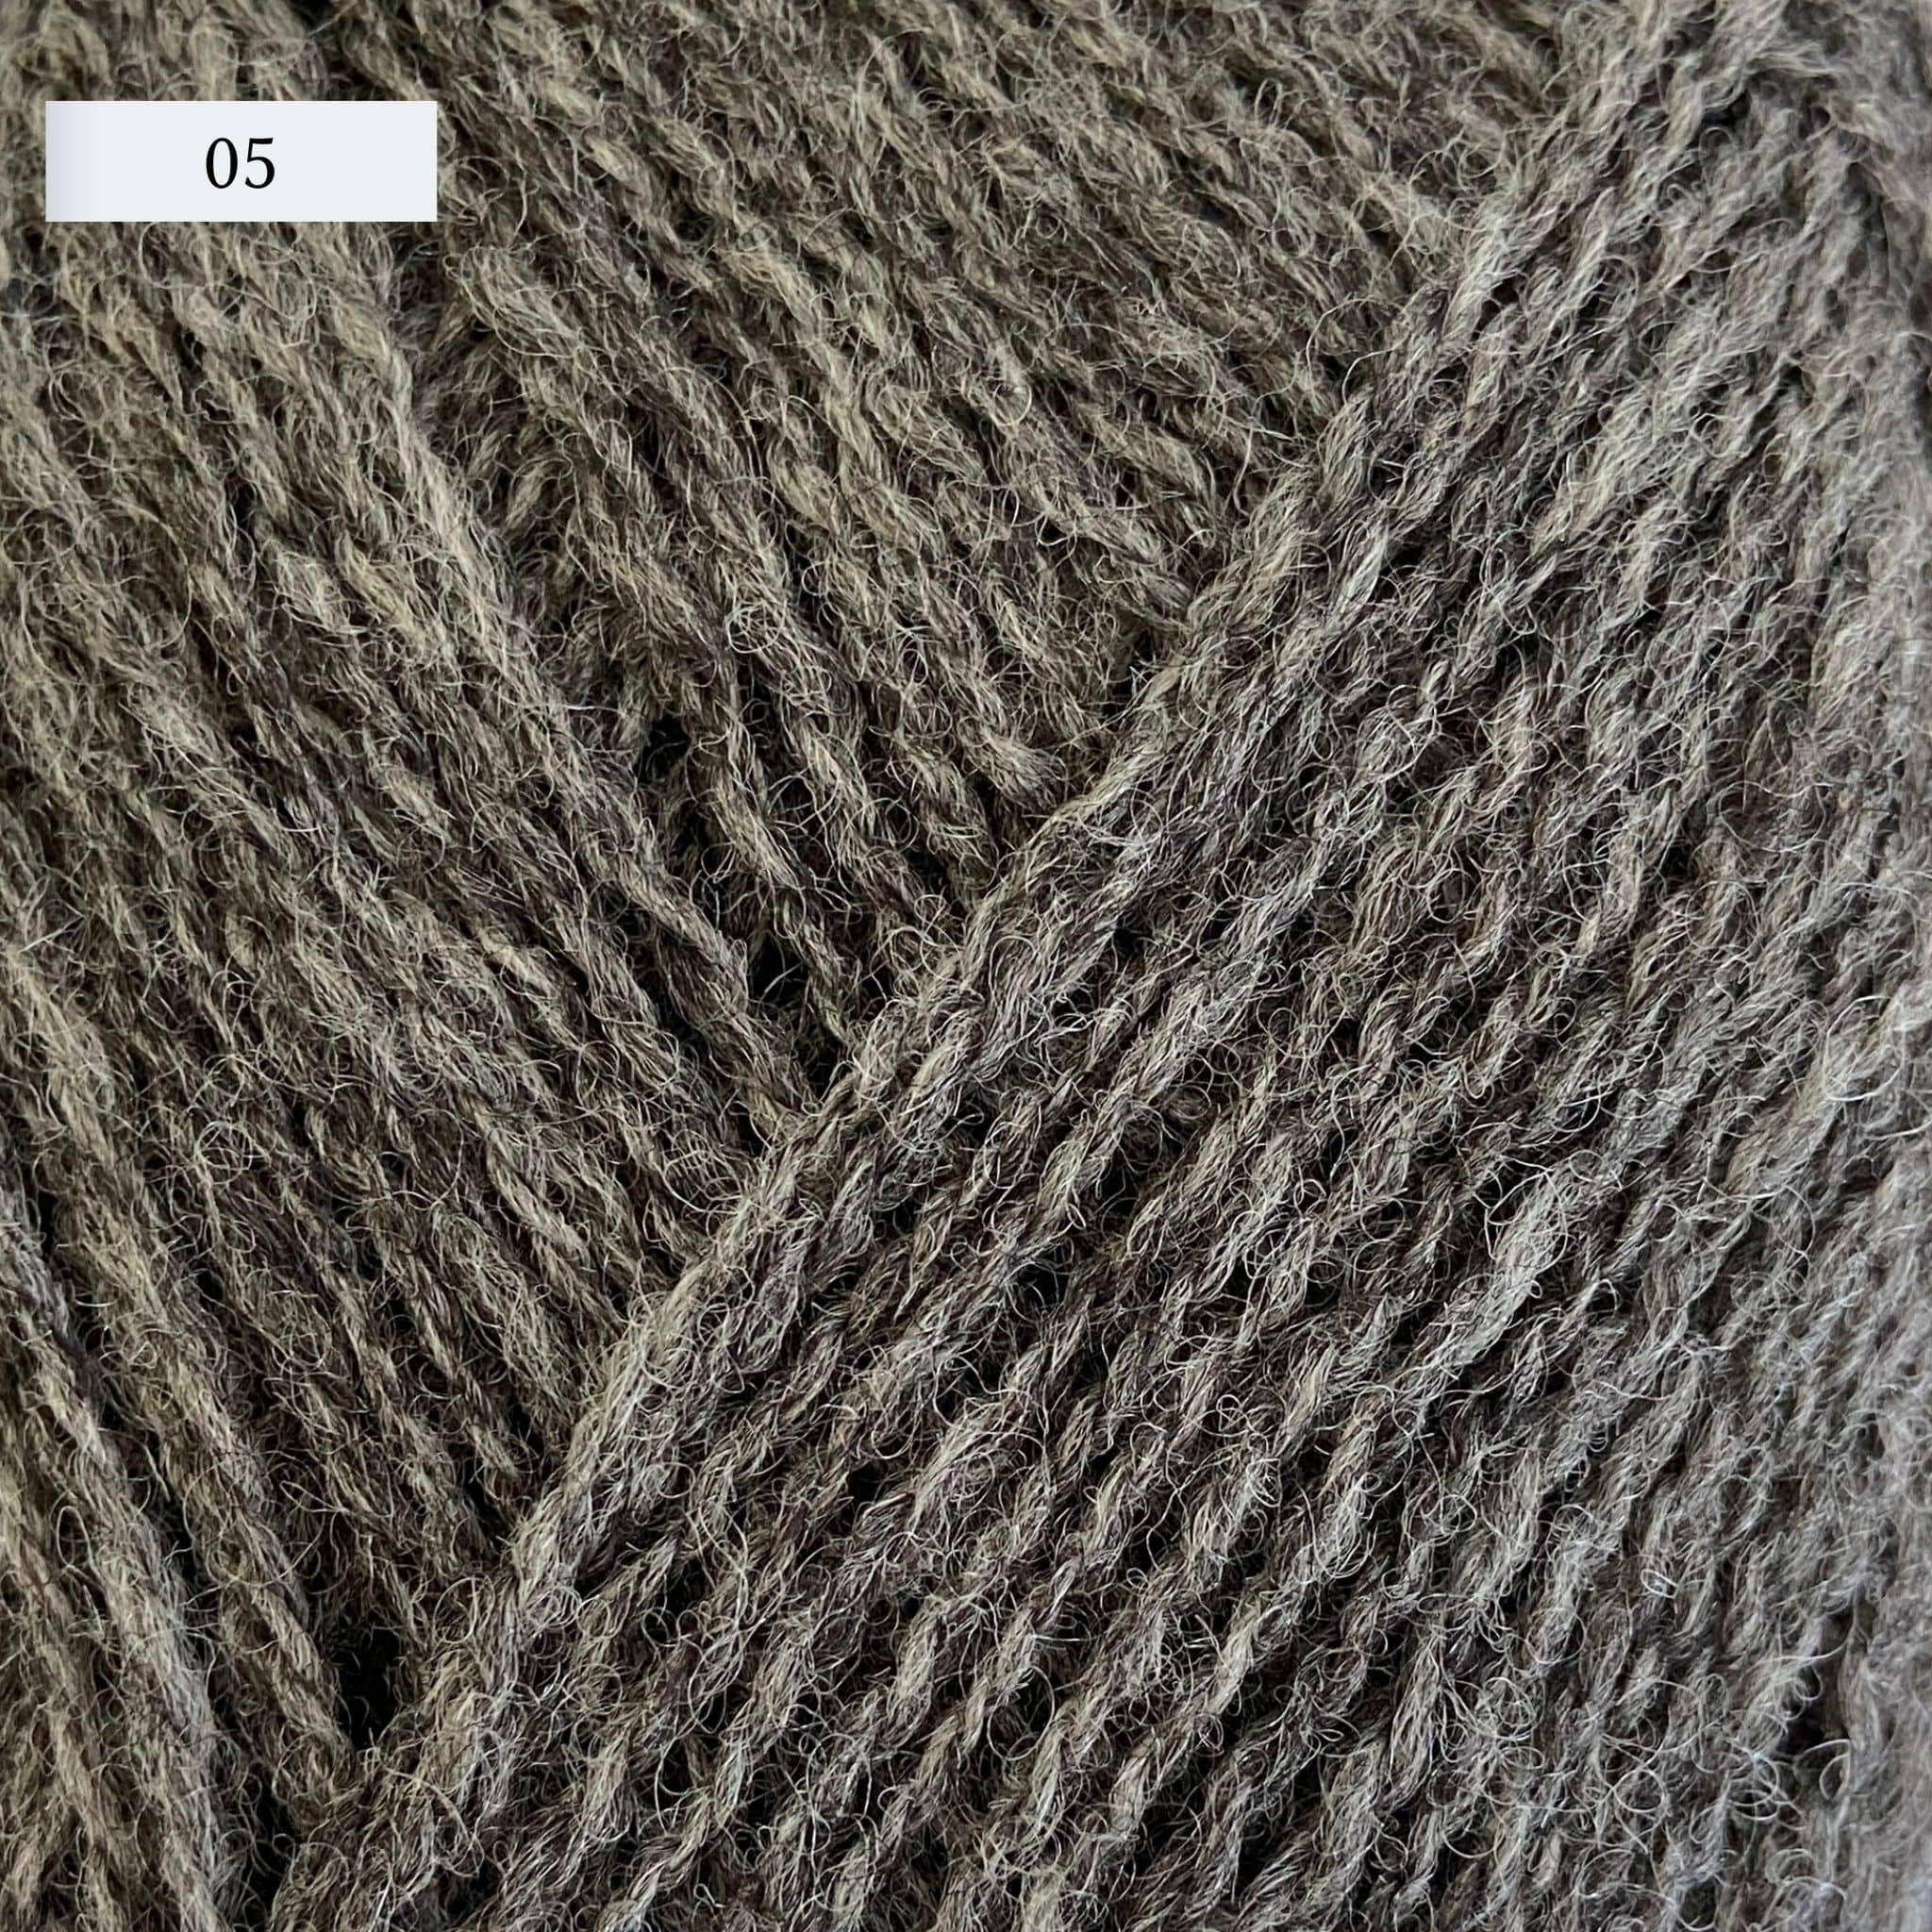 Rauma Lamullgarn, a fingering weight yarn, in color 05, a warm heathered grey